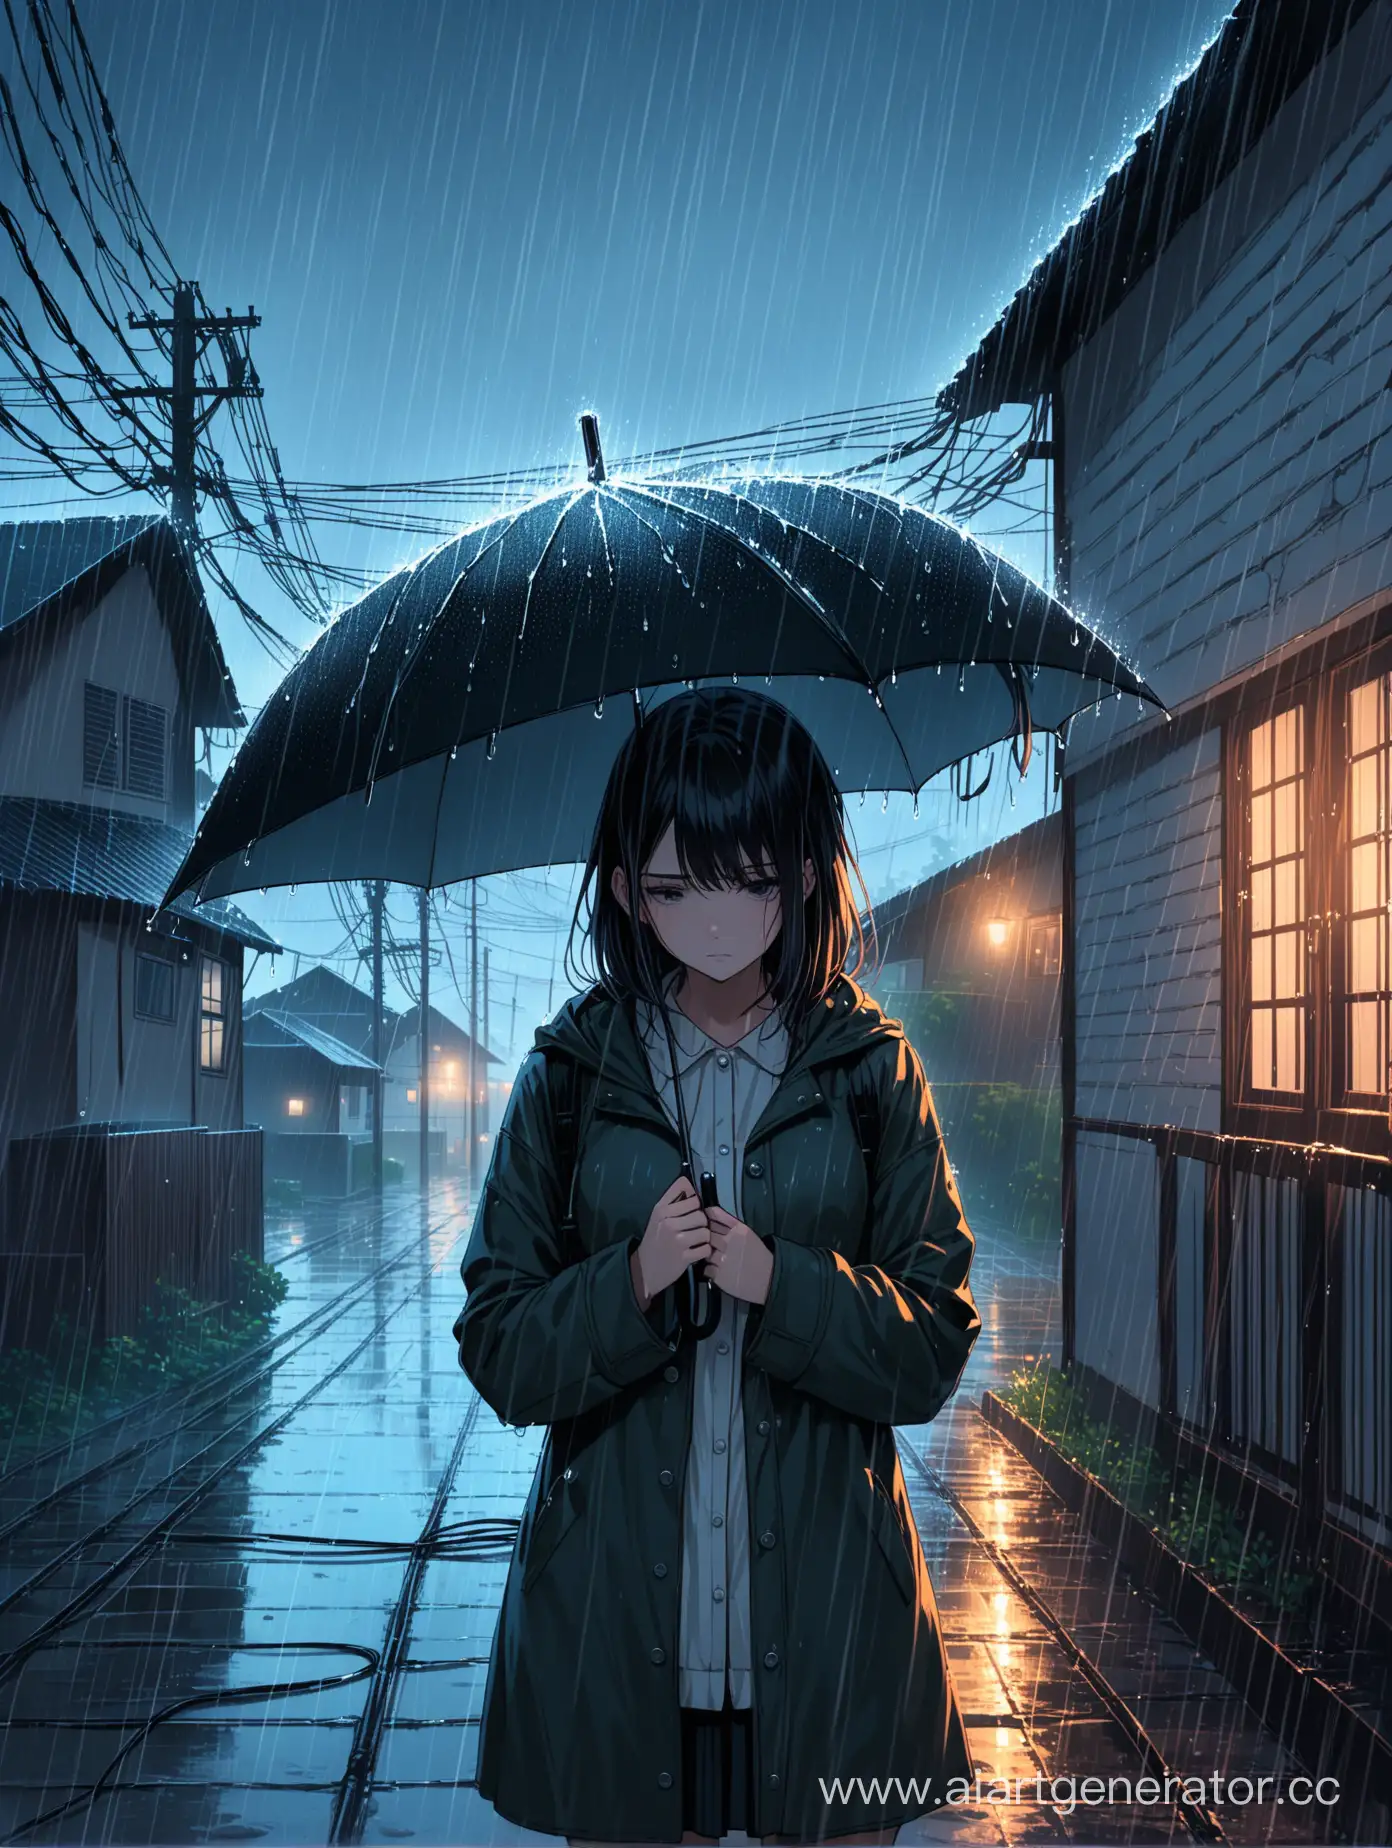 дом сердце, дождь, холодная атмосфера, девочка с зонтом, разбитое сердце, электро провода